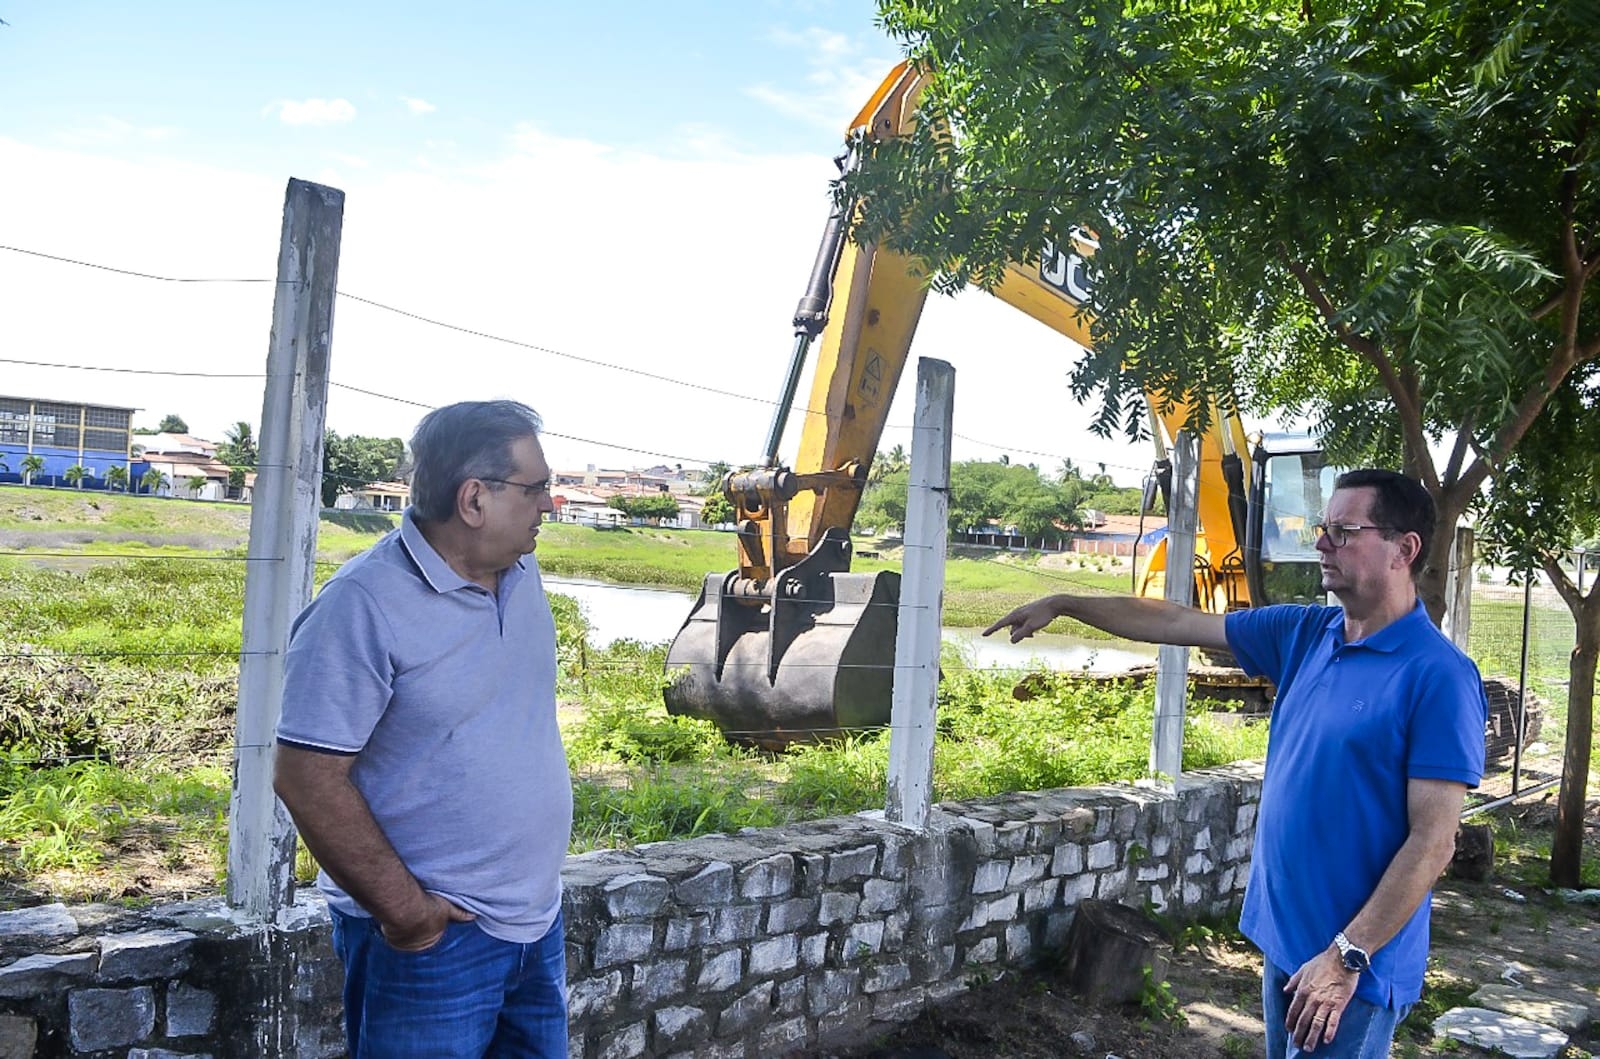 Serviços de limpeza de lagoas de captação e obras viárias são vistoriados pelo prefeito